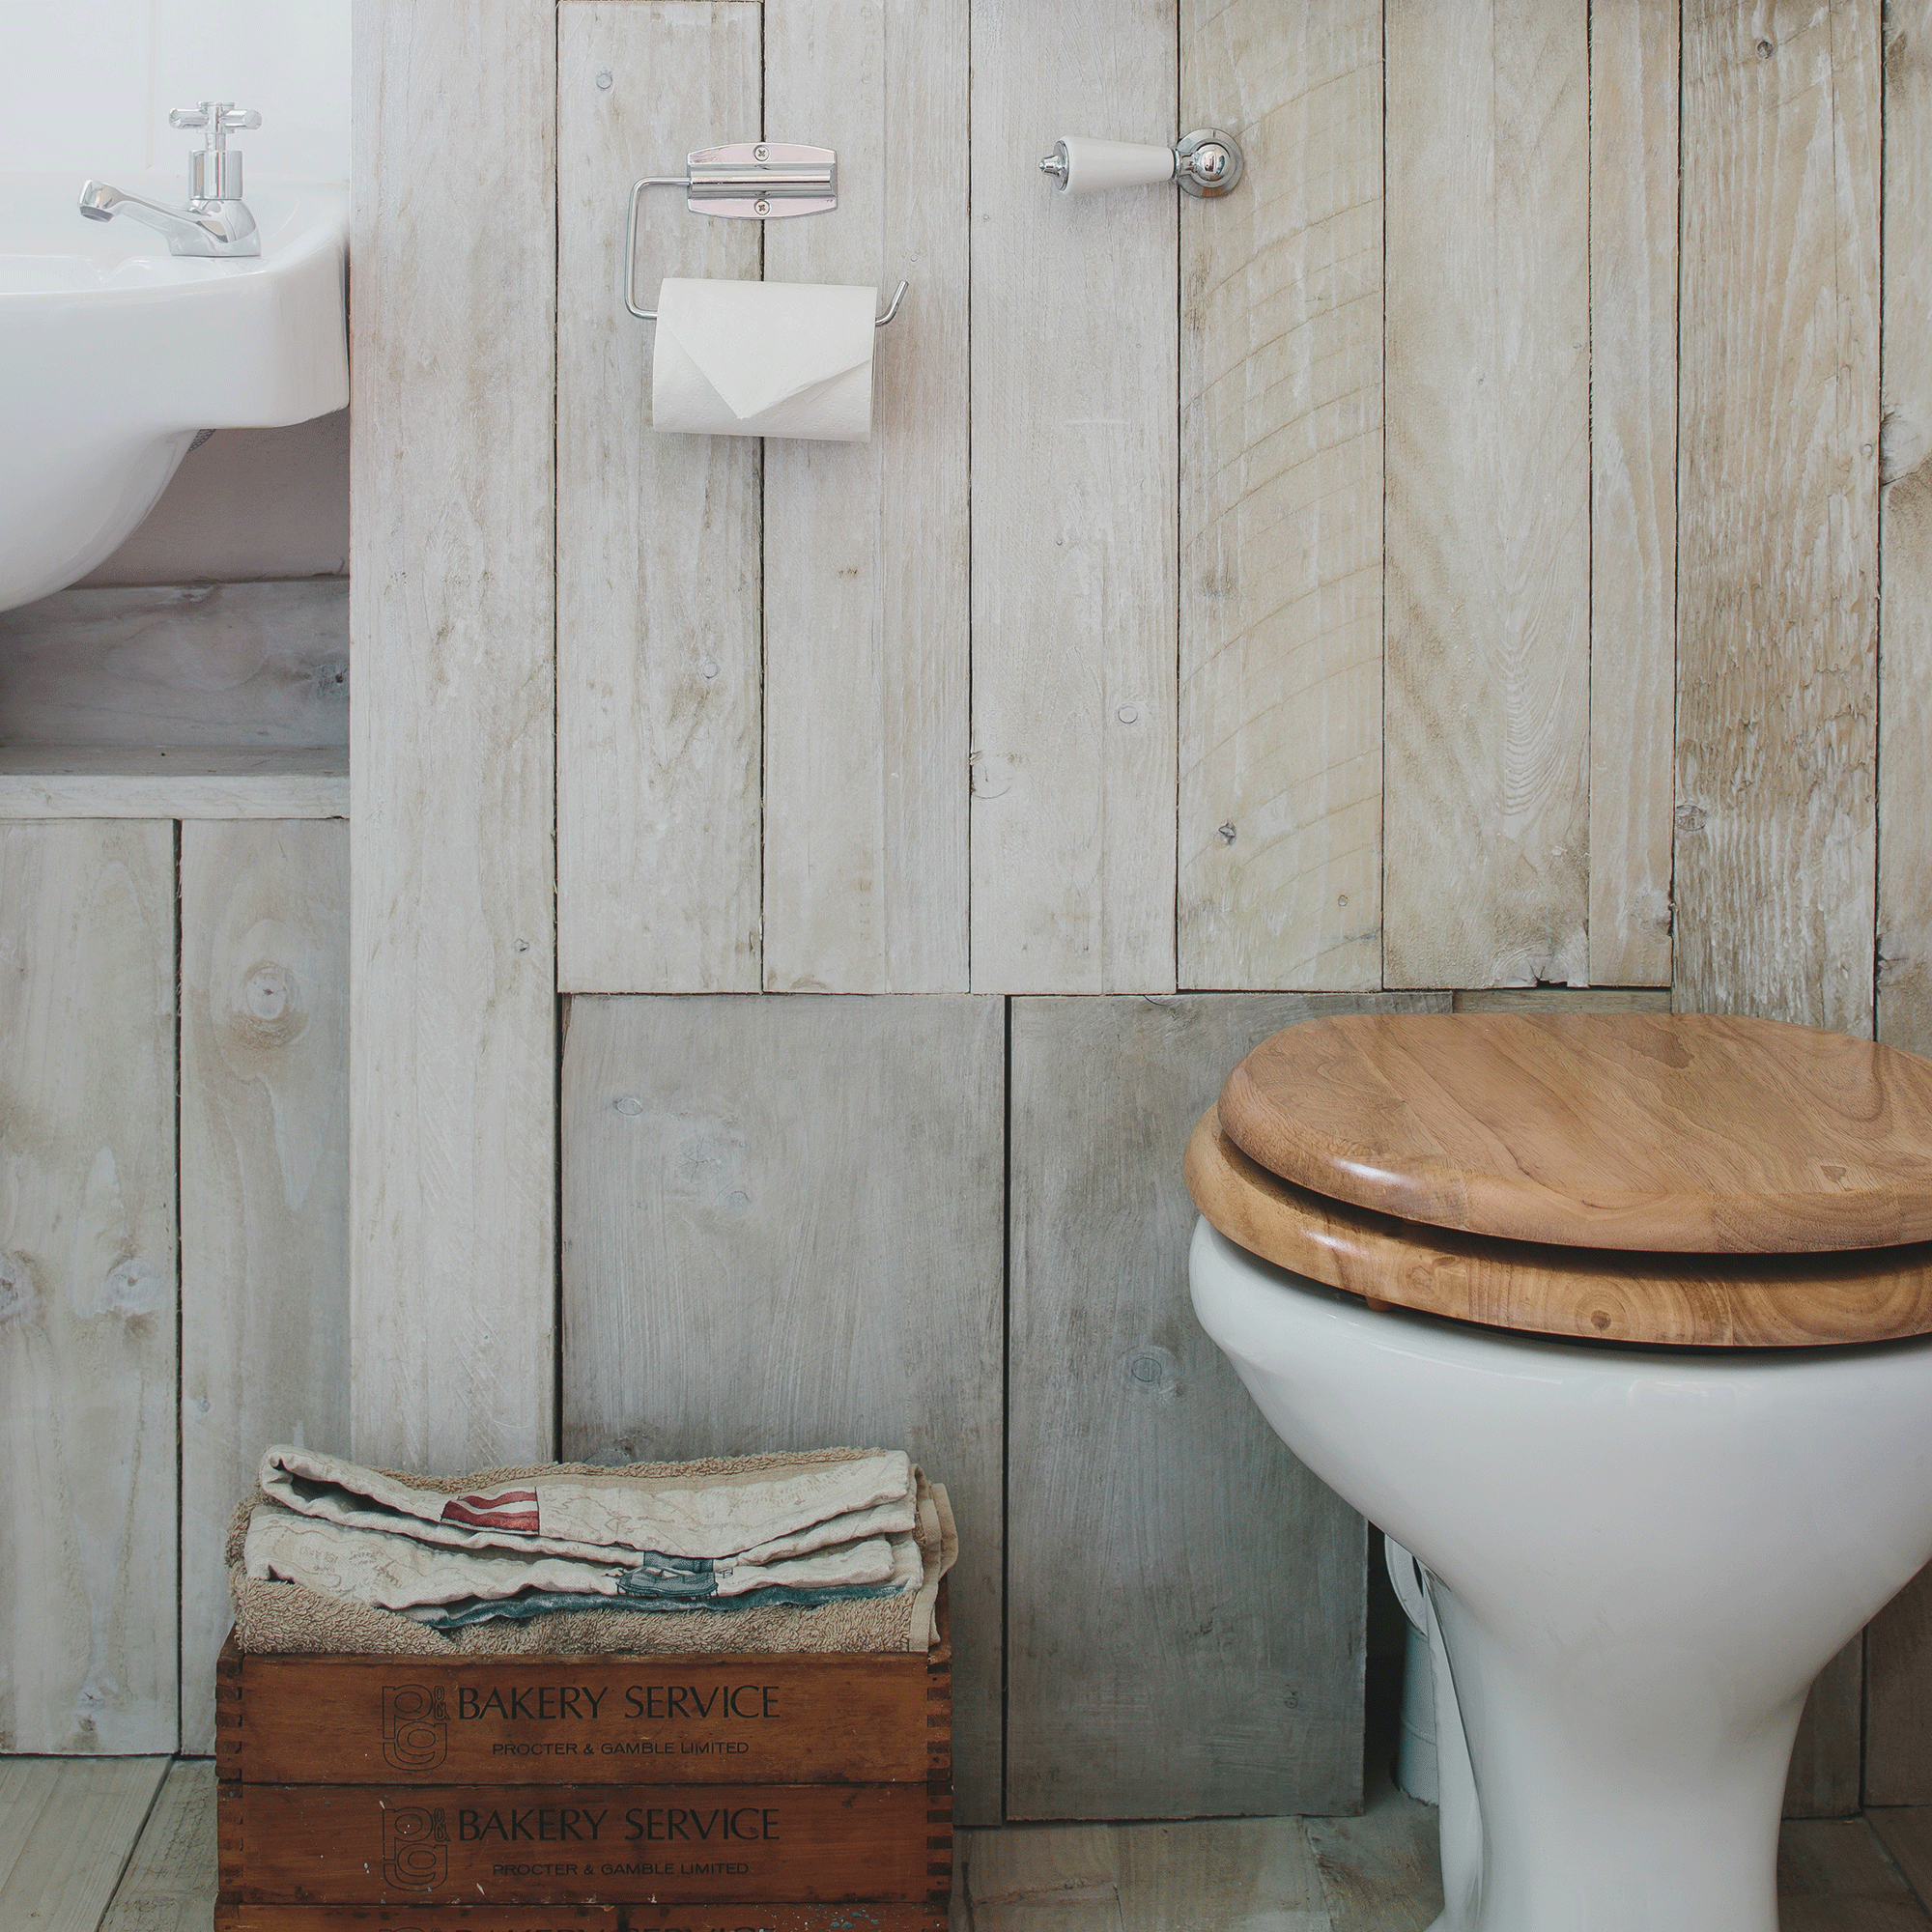 Wooden toilet seat in bathroom